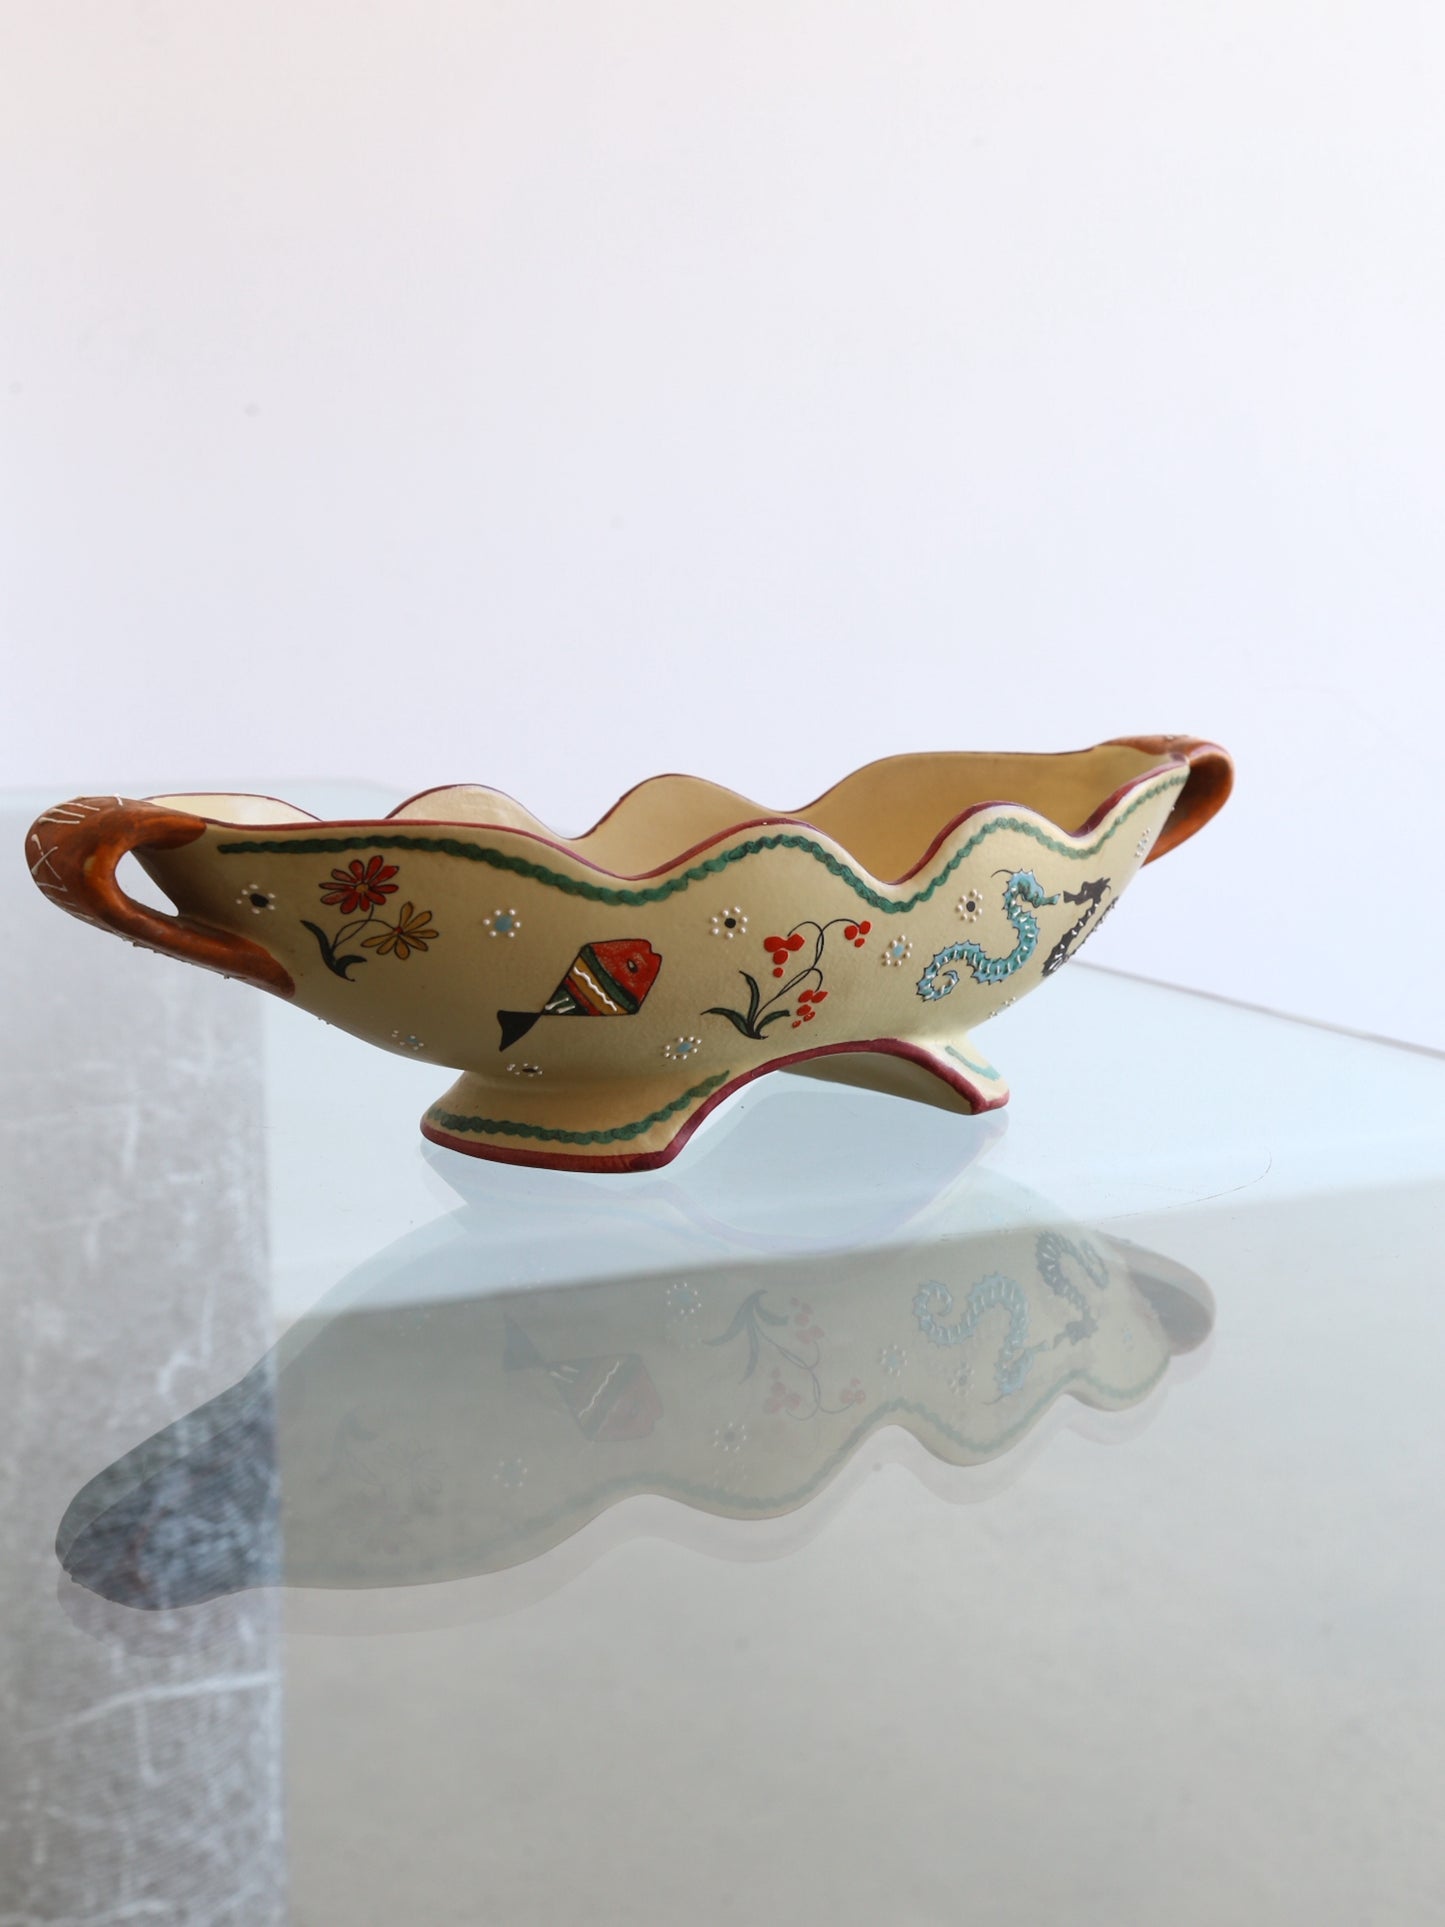 Volpi Deruta Italian Centrepiece Bowl Ceramic with Art Work, 1960s